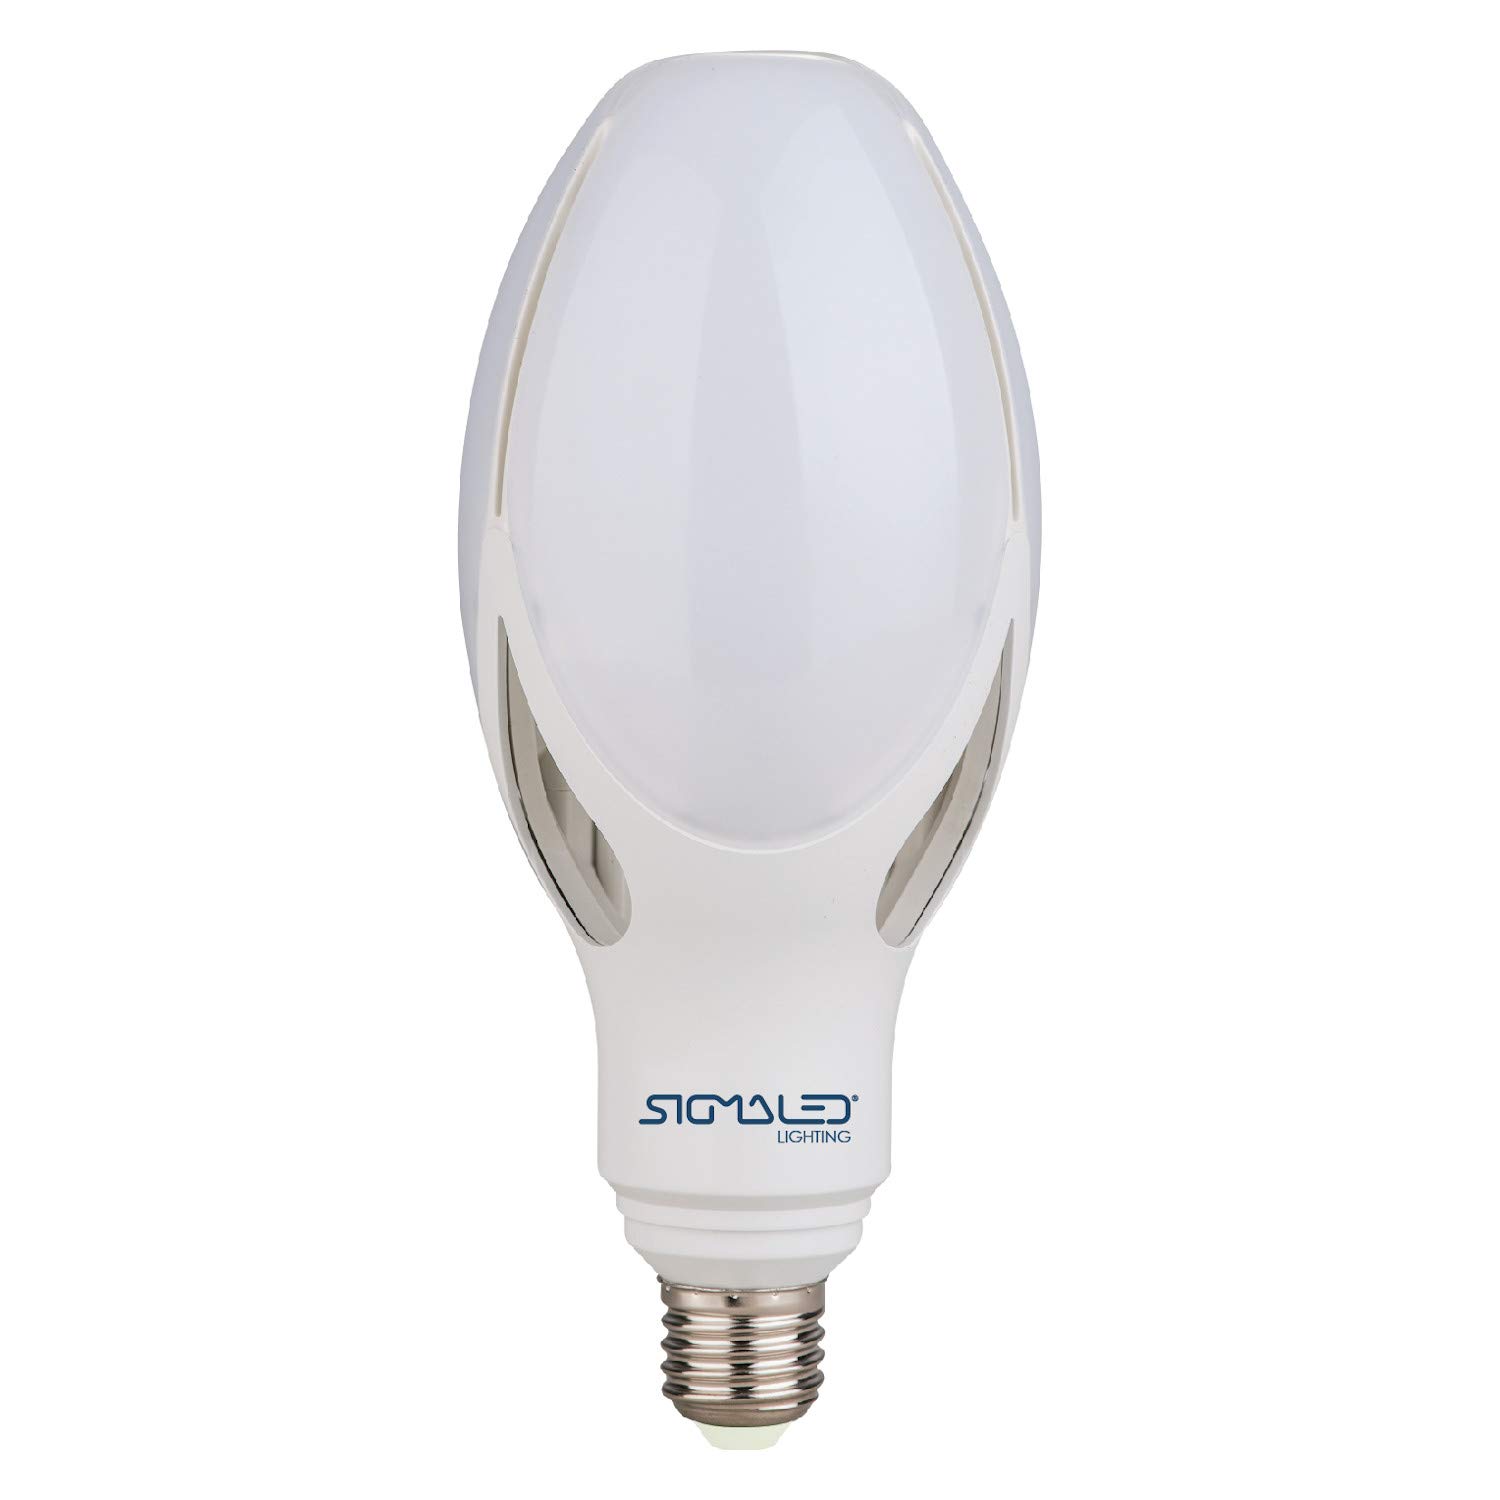 Sigmaled lighting LED-Leuchtmittel E27-Sockel, 50 W, 5500 Lumen, entspricht 350 W Glühlampen oder 150 W Energiesparlampen, LED-Glühbirne warmweißes Licht 2800K, Ø90x216mm.